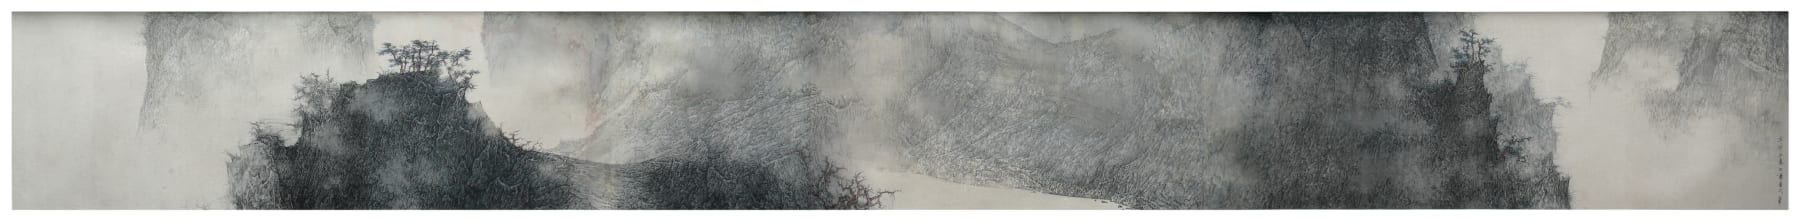 Li Huayi 李華弌, Pine Tree Bathing in Breeze《松風清遠圖》, 2011